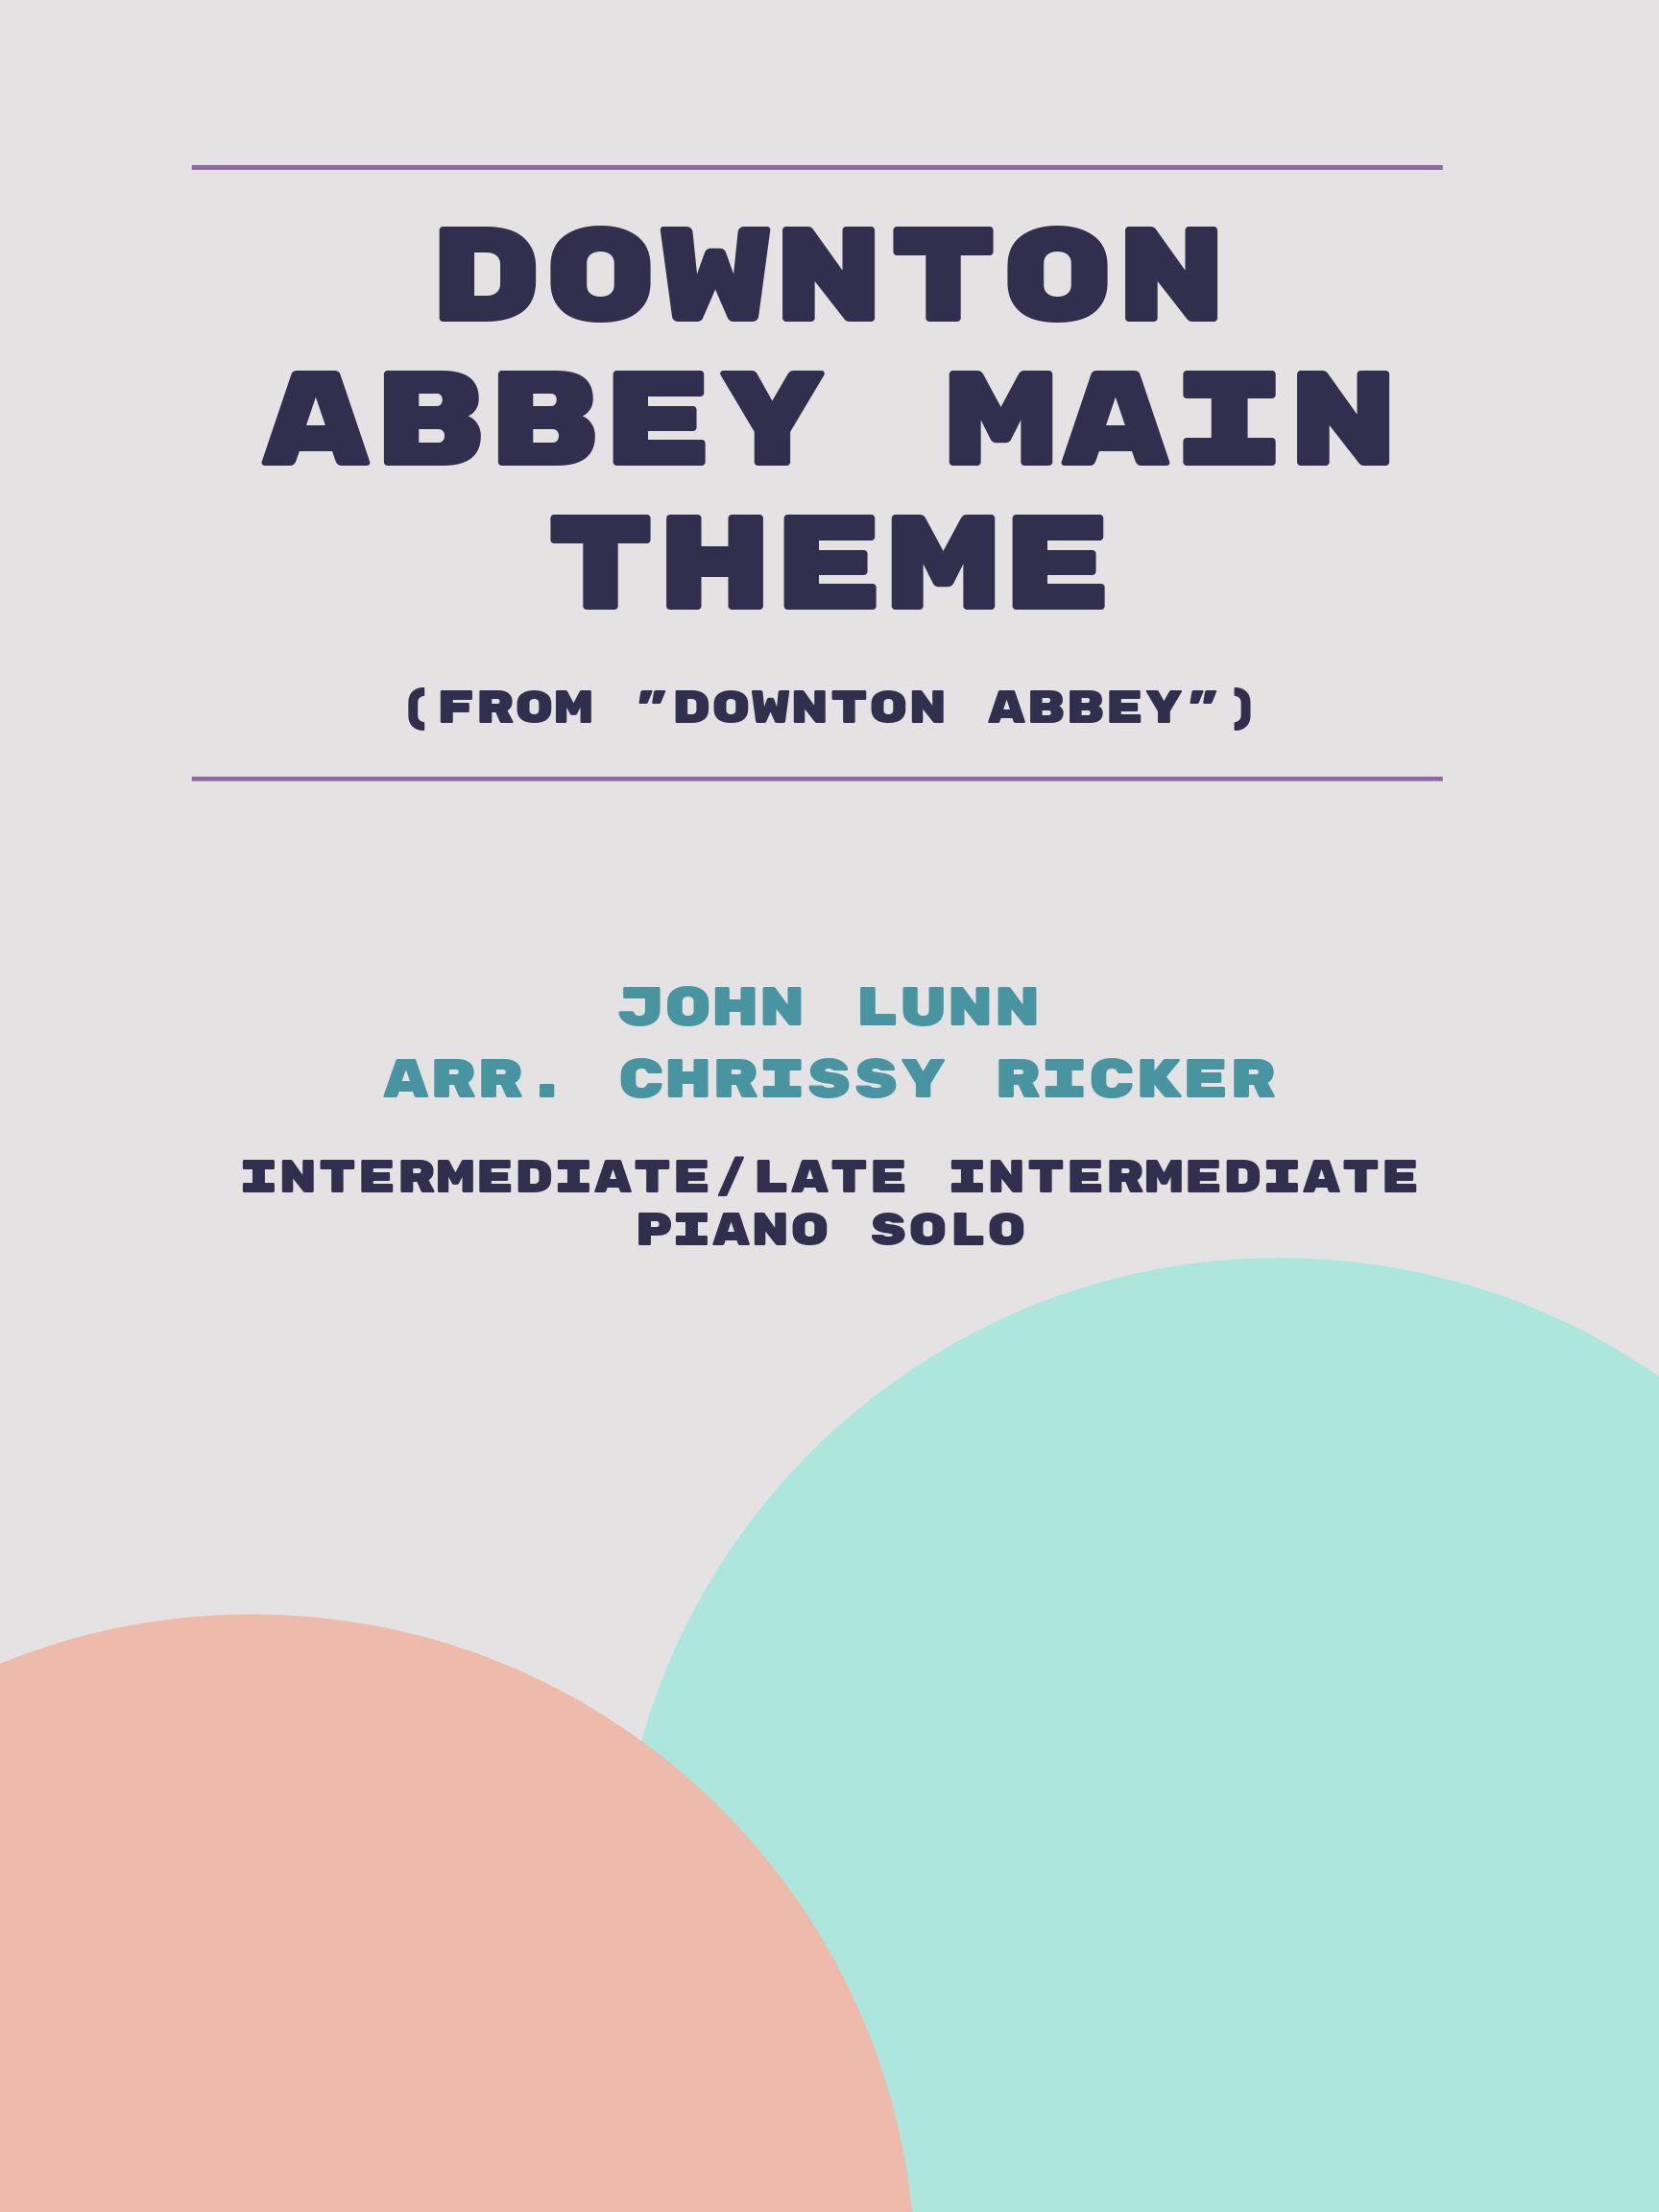 Downton Abbey Main Theme Sample Page